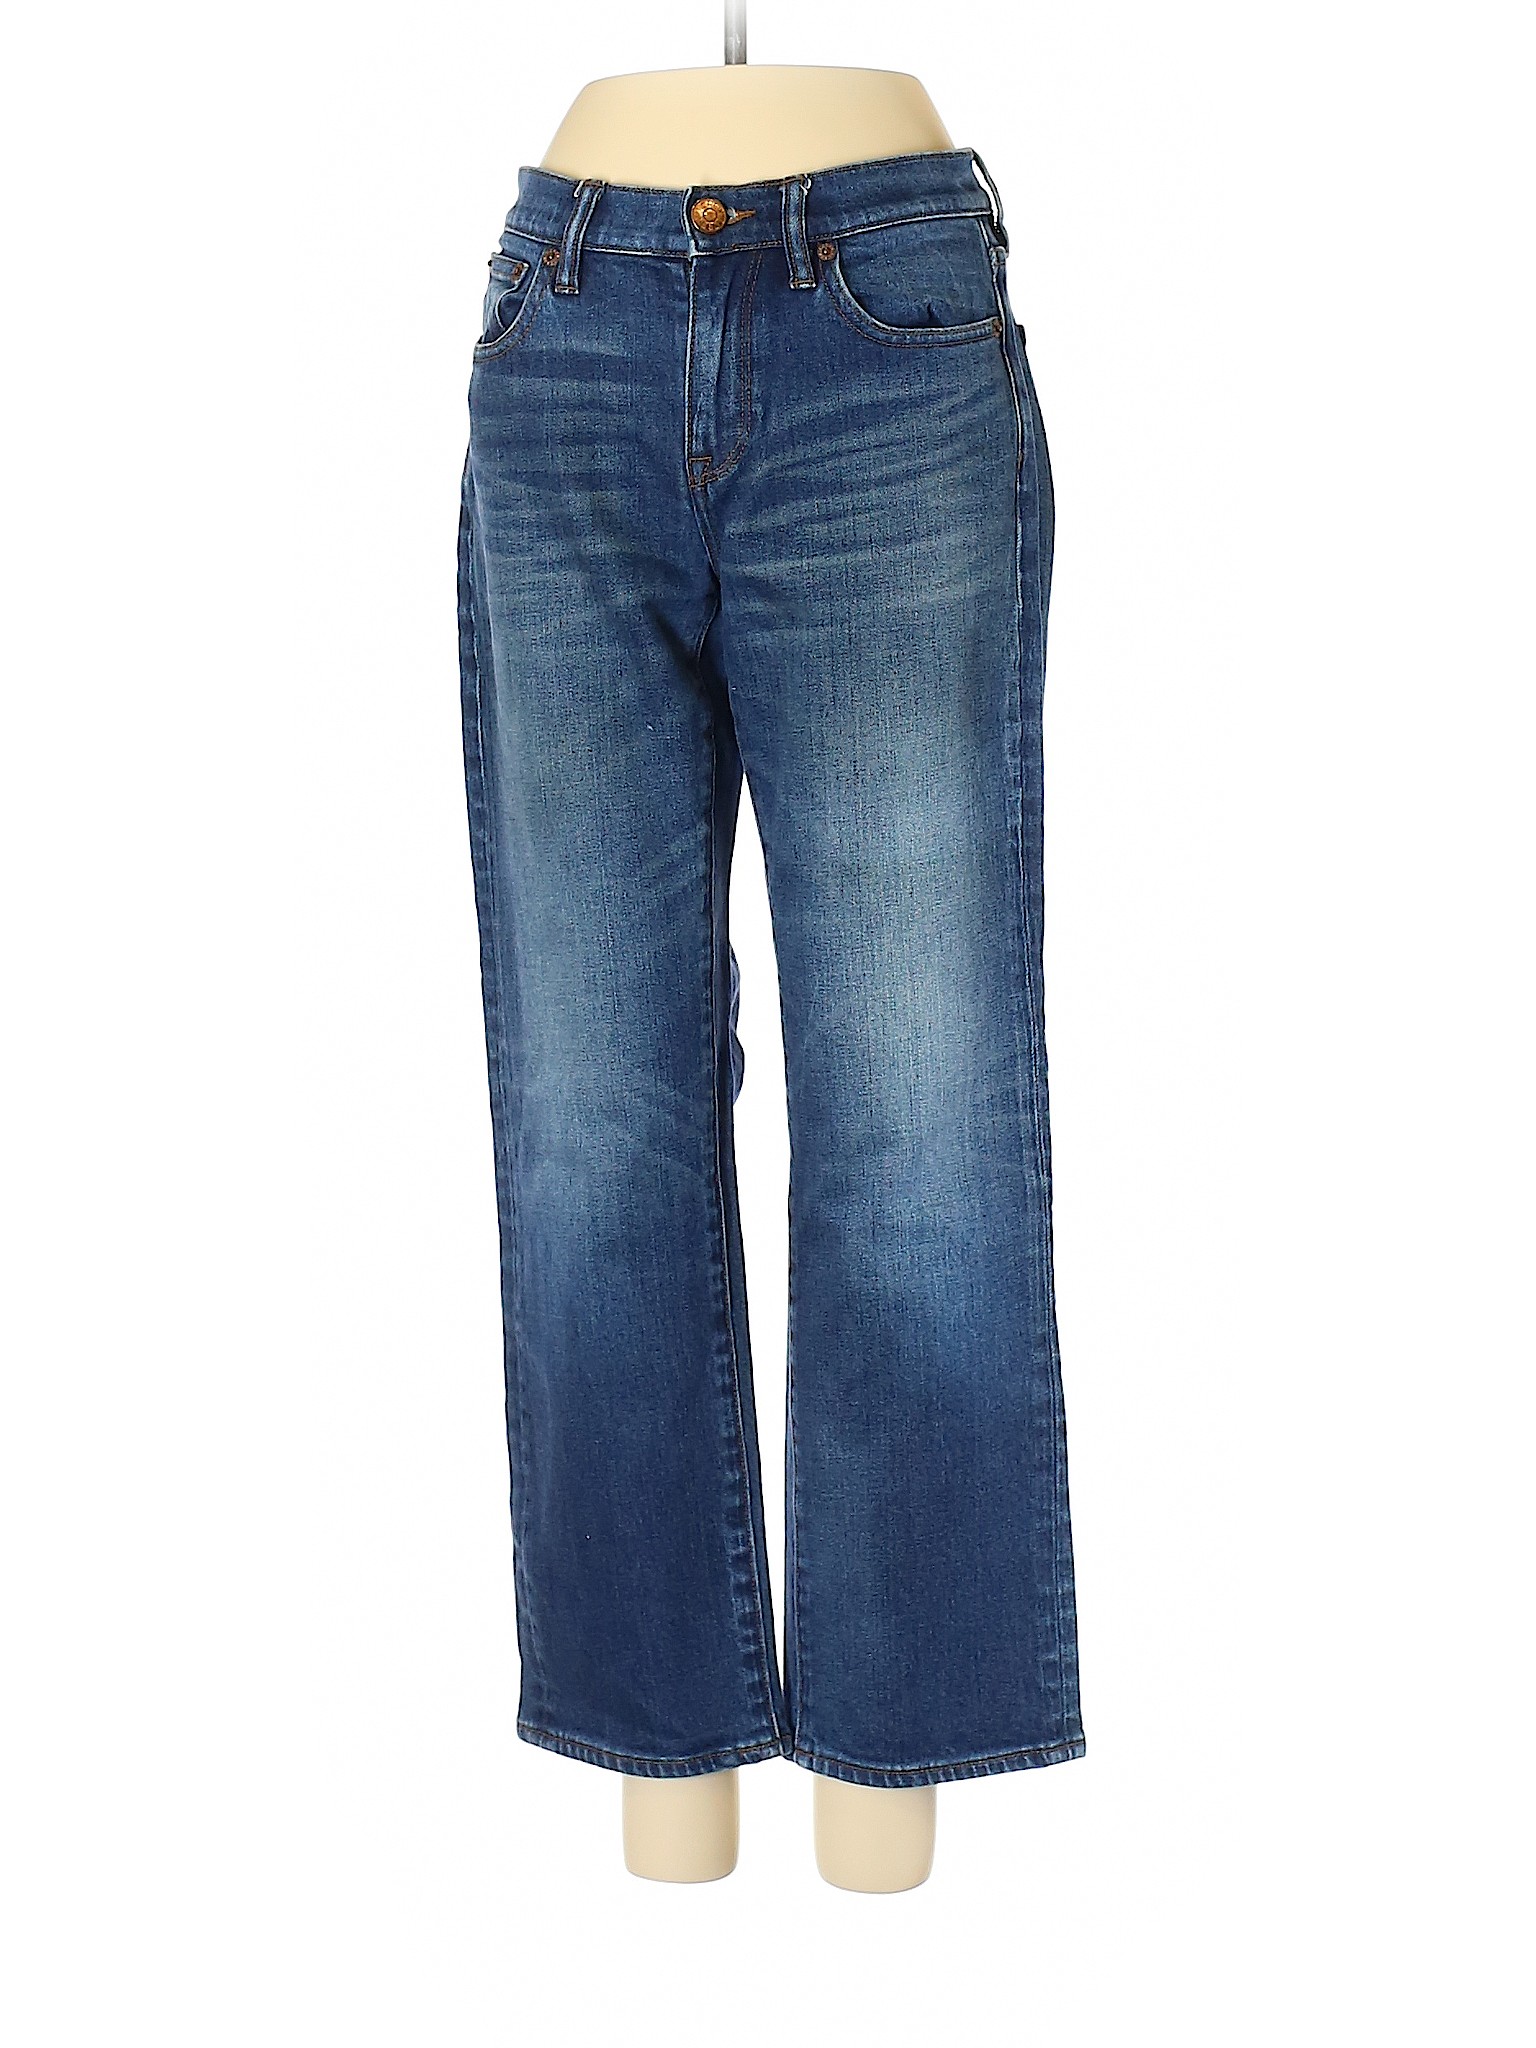 J. Crew Women Blue Jeans 24W | eBay